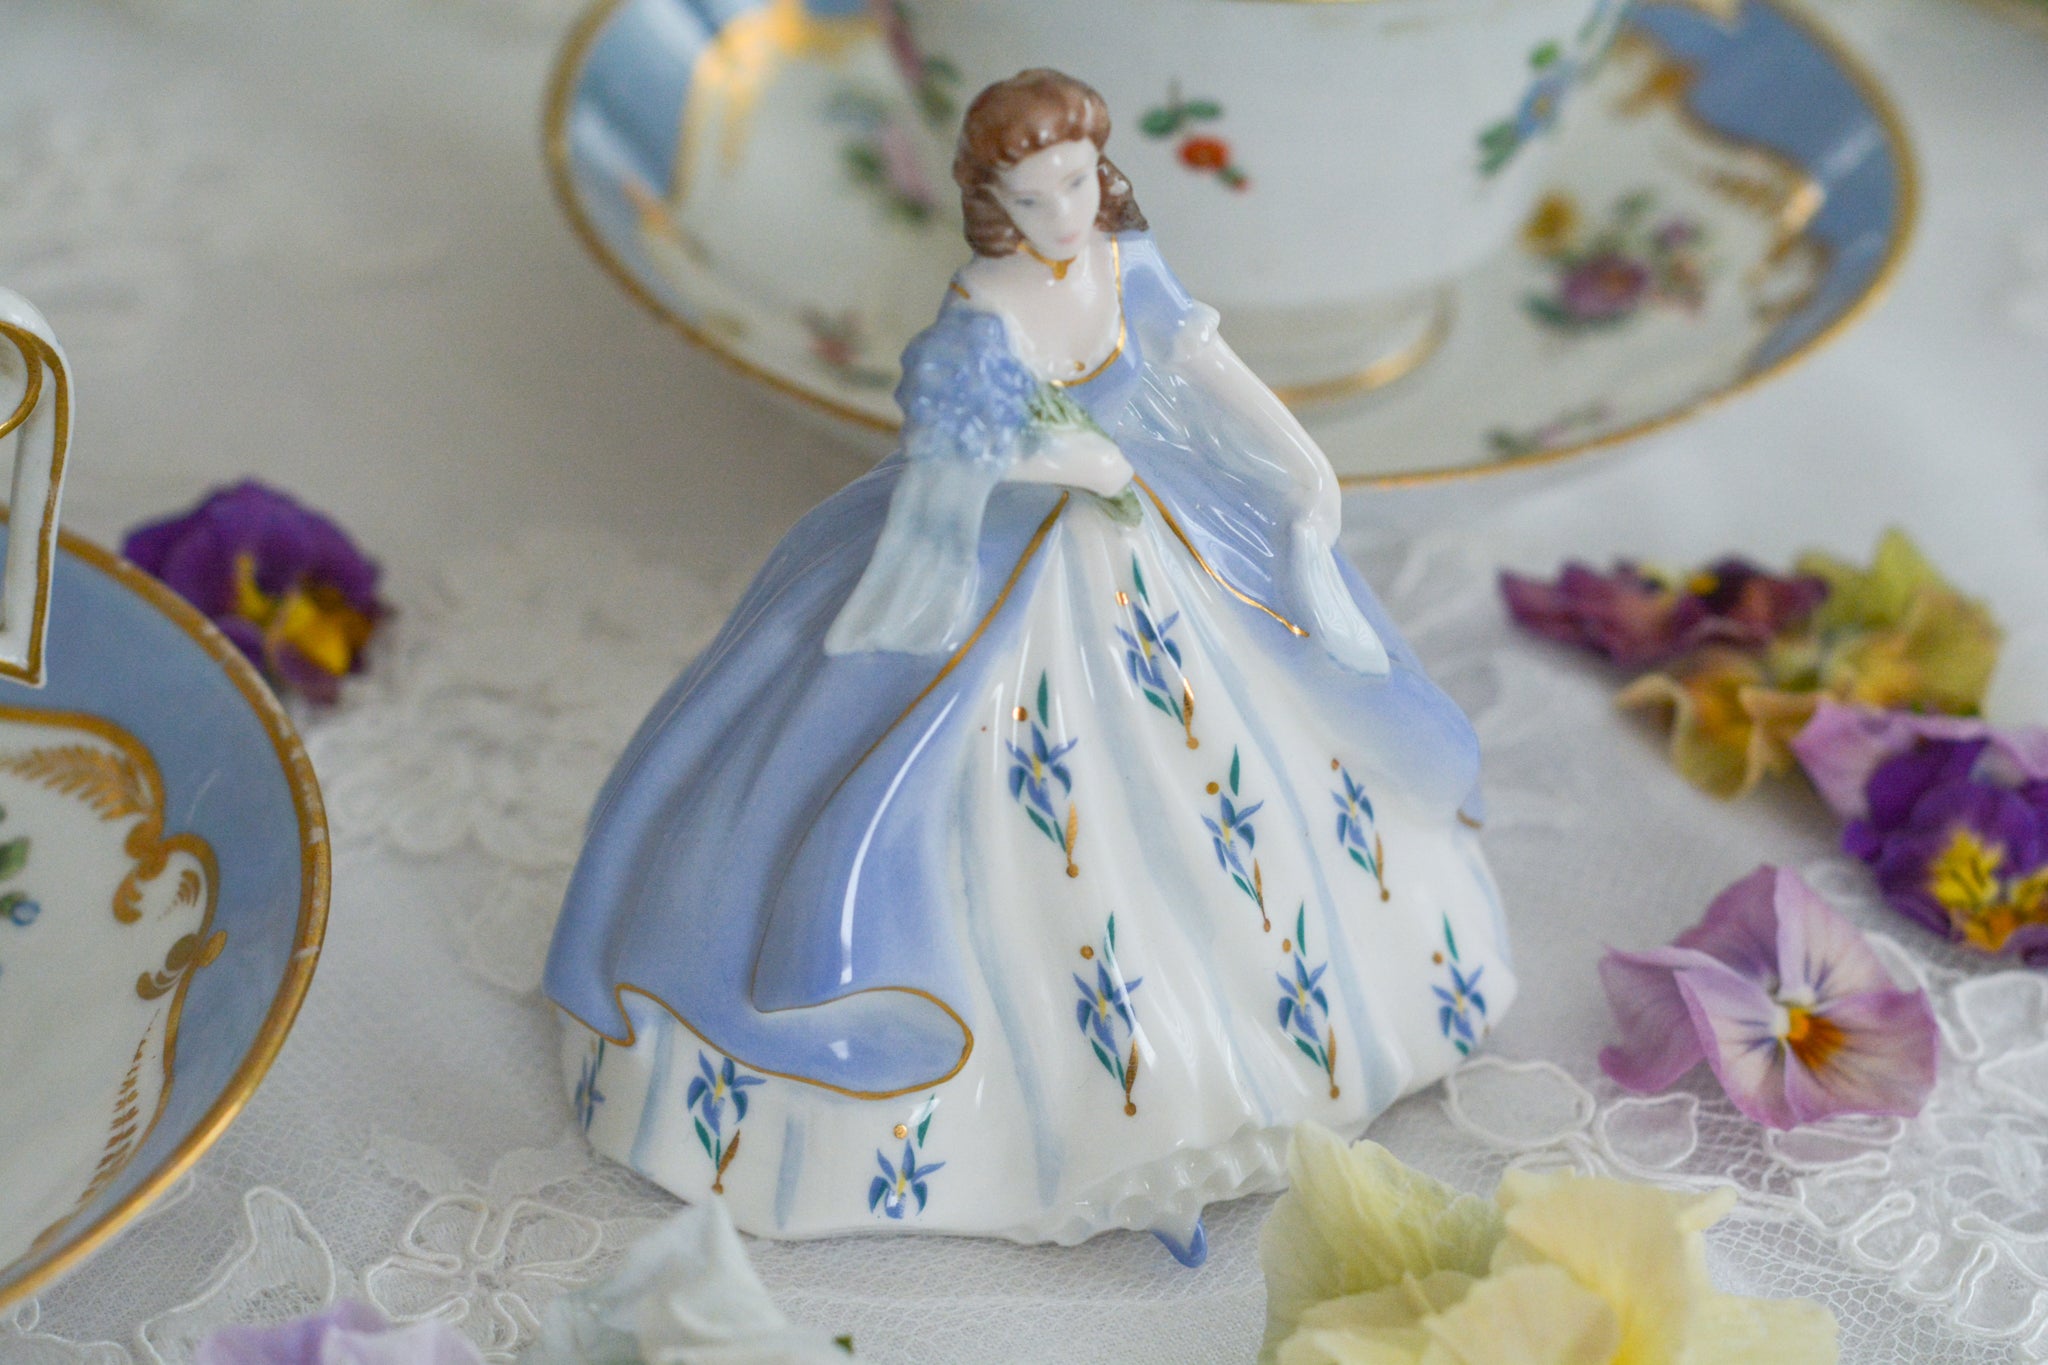 figurine – Rose Antiques